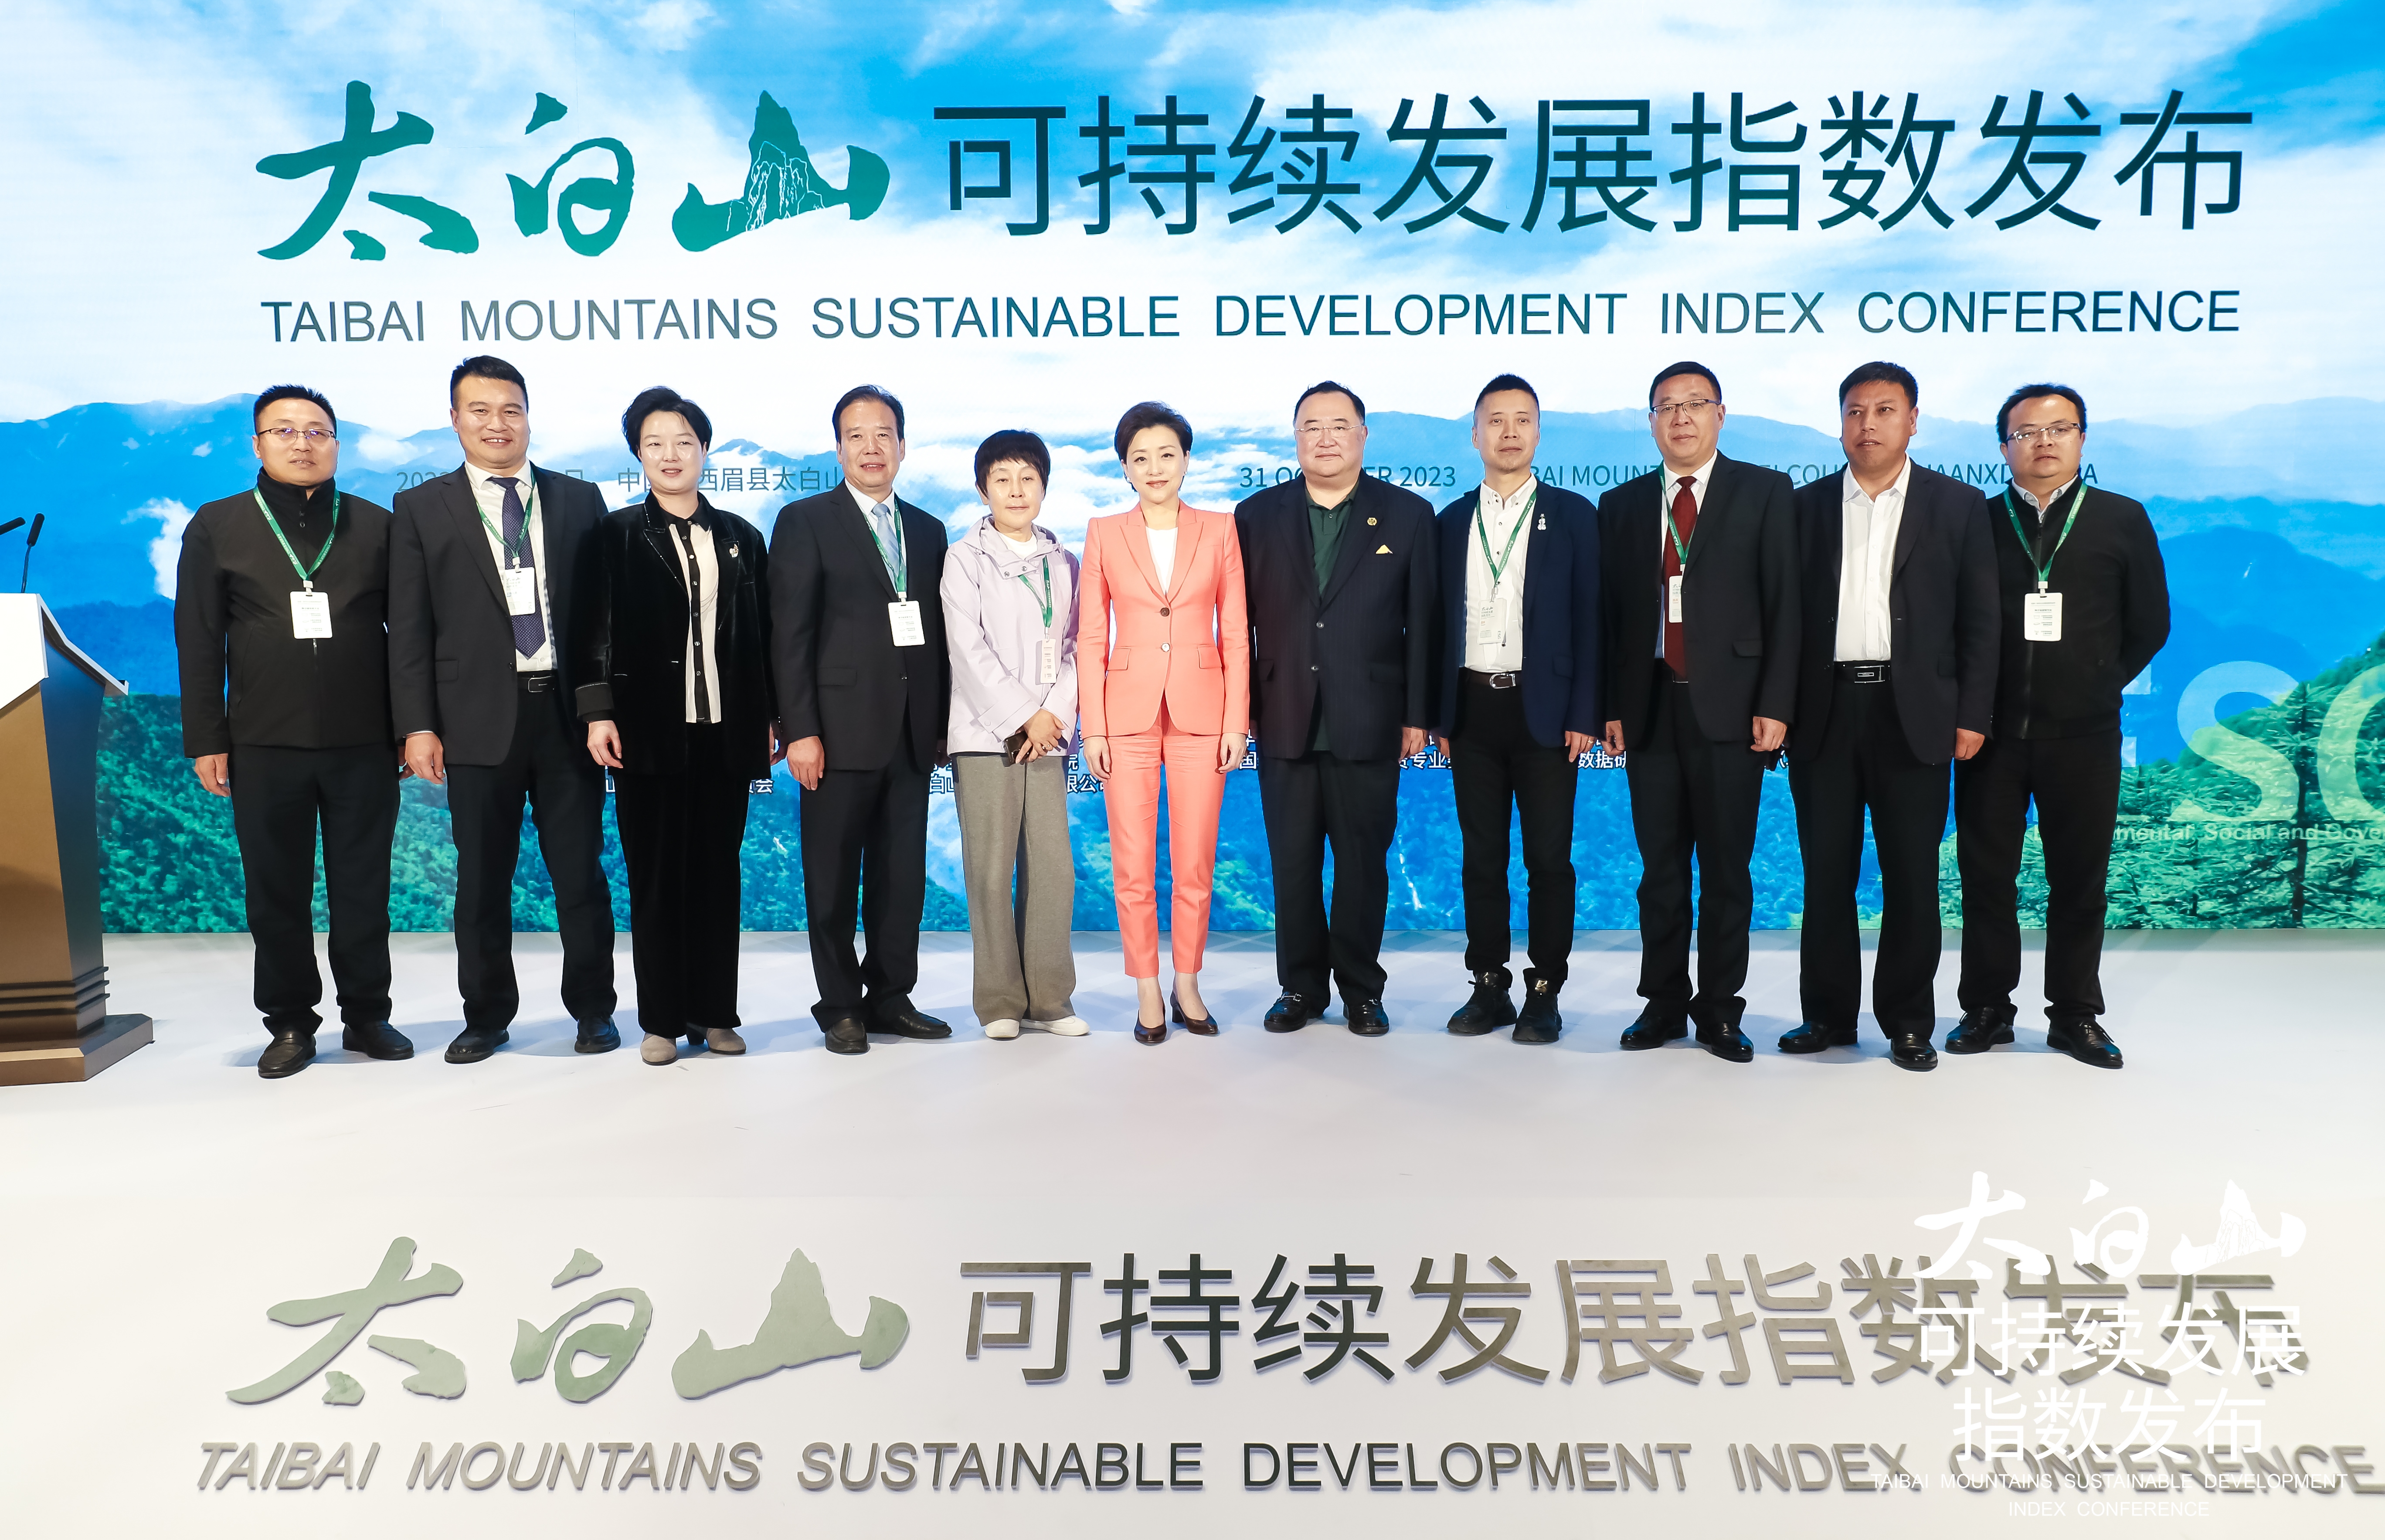 共建绿色未来 引领可持续发展——太白山可持续发展指数发布会在太白山·唐镇举行